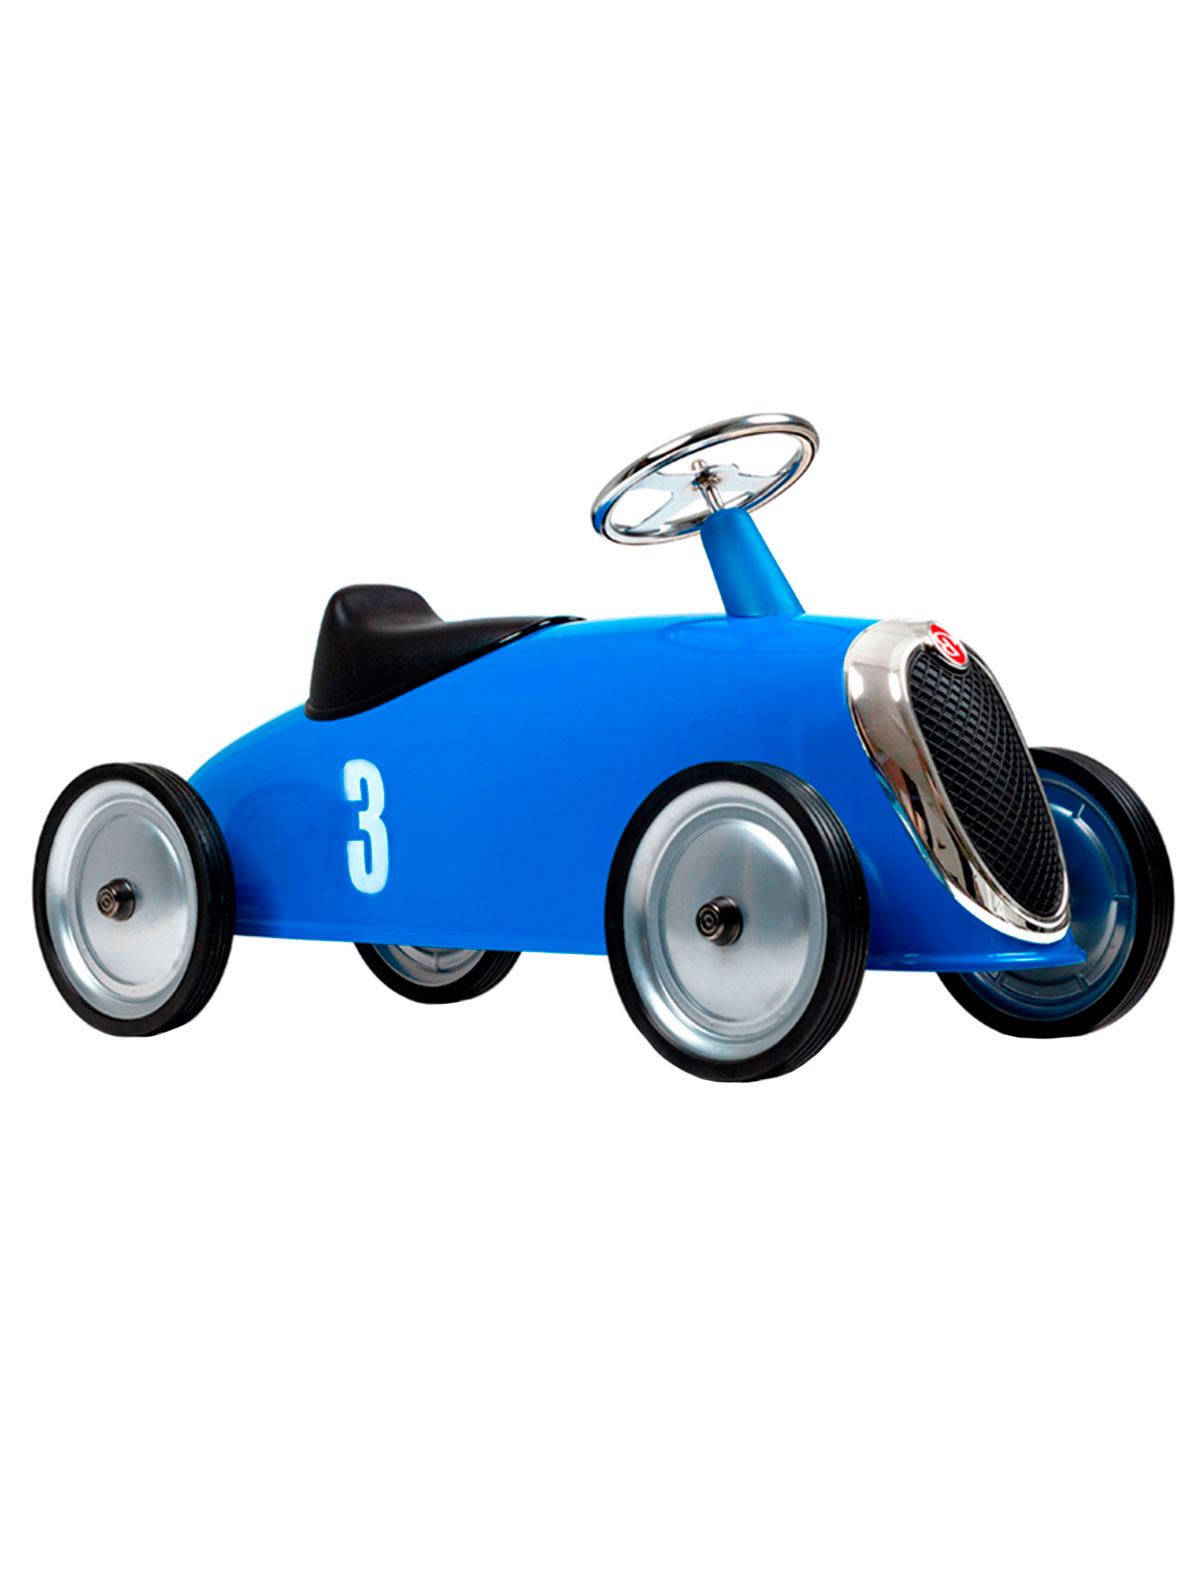 Машинка-транспорт детская Baghera 2202596, цвет синий